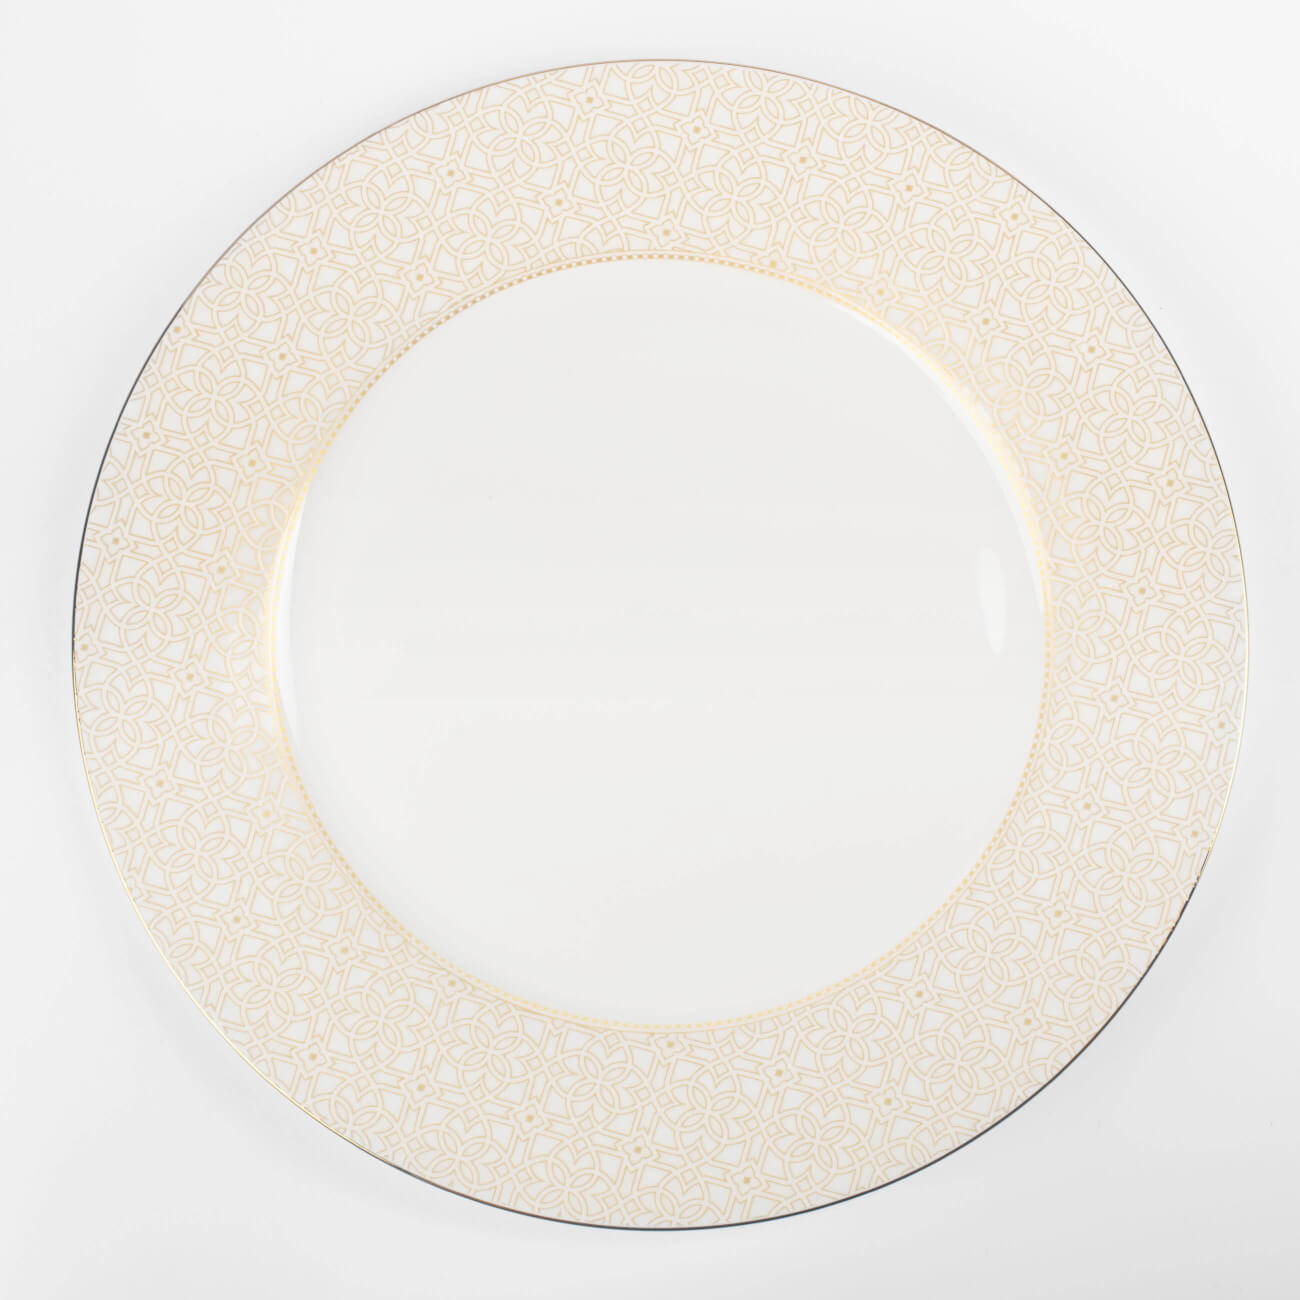 Тарелка обеденная, 27 см, фарфор F, с золотистым кантом, Орнамент, Liberty тарелка обеденная luminarc diwali 25 см серый